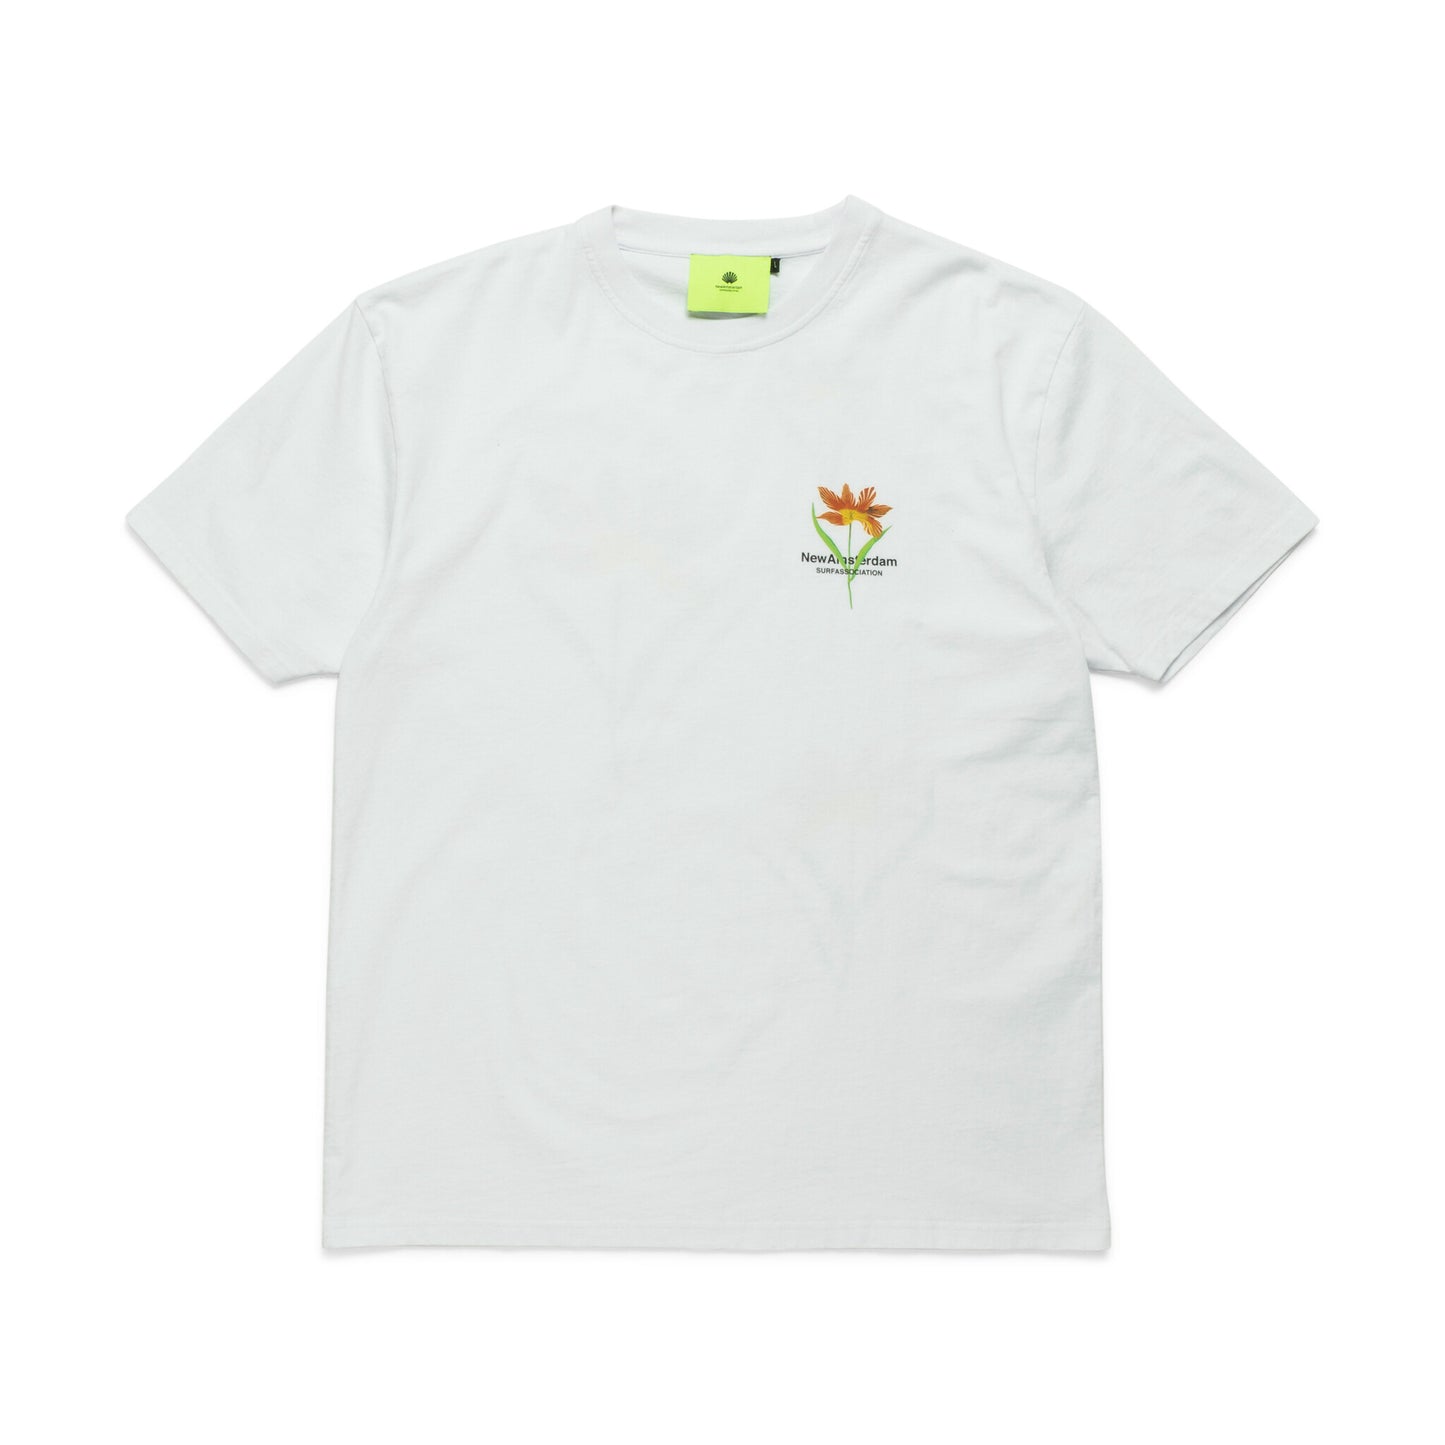 T-shirt Tulip White